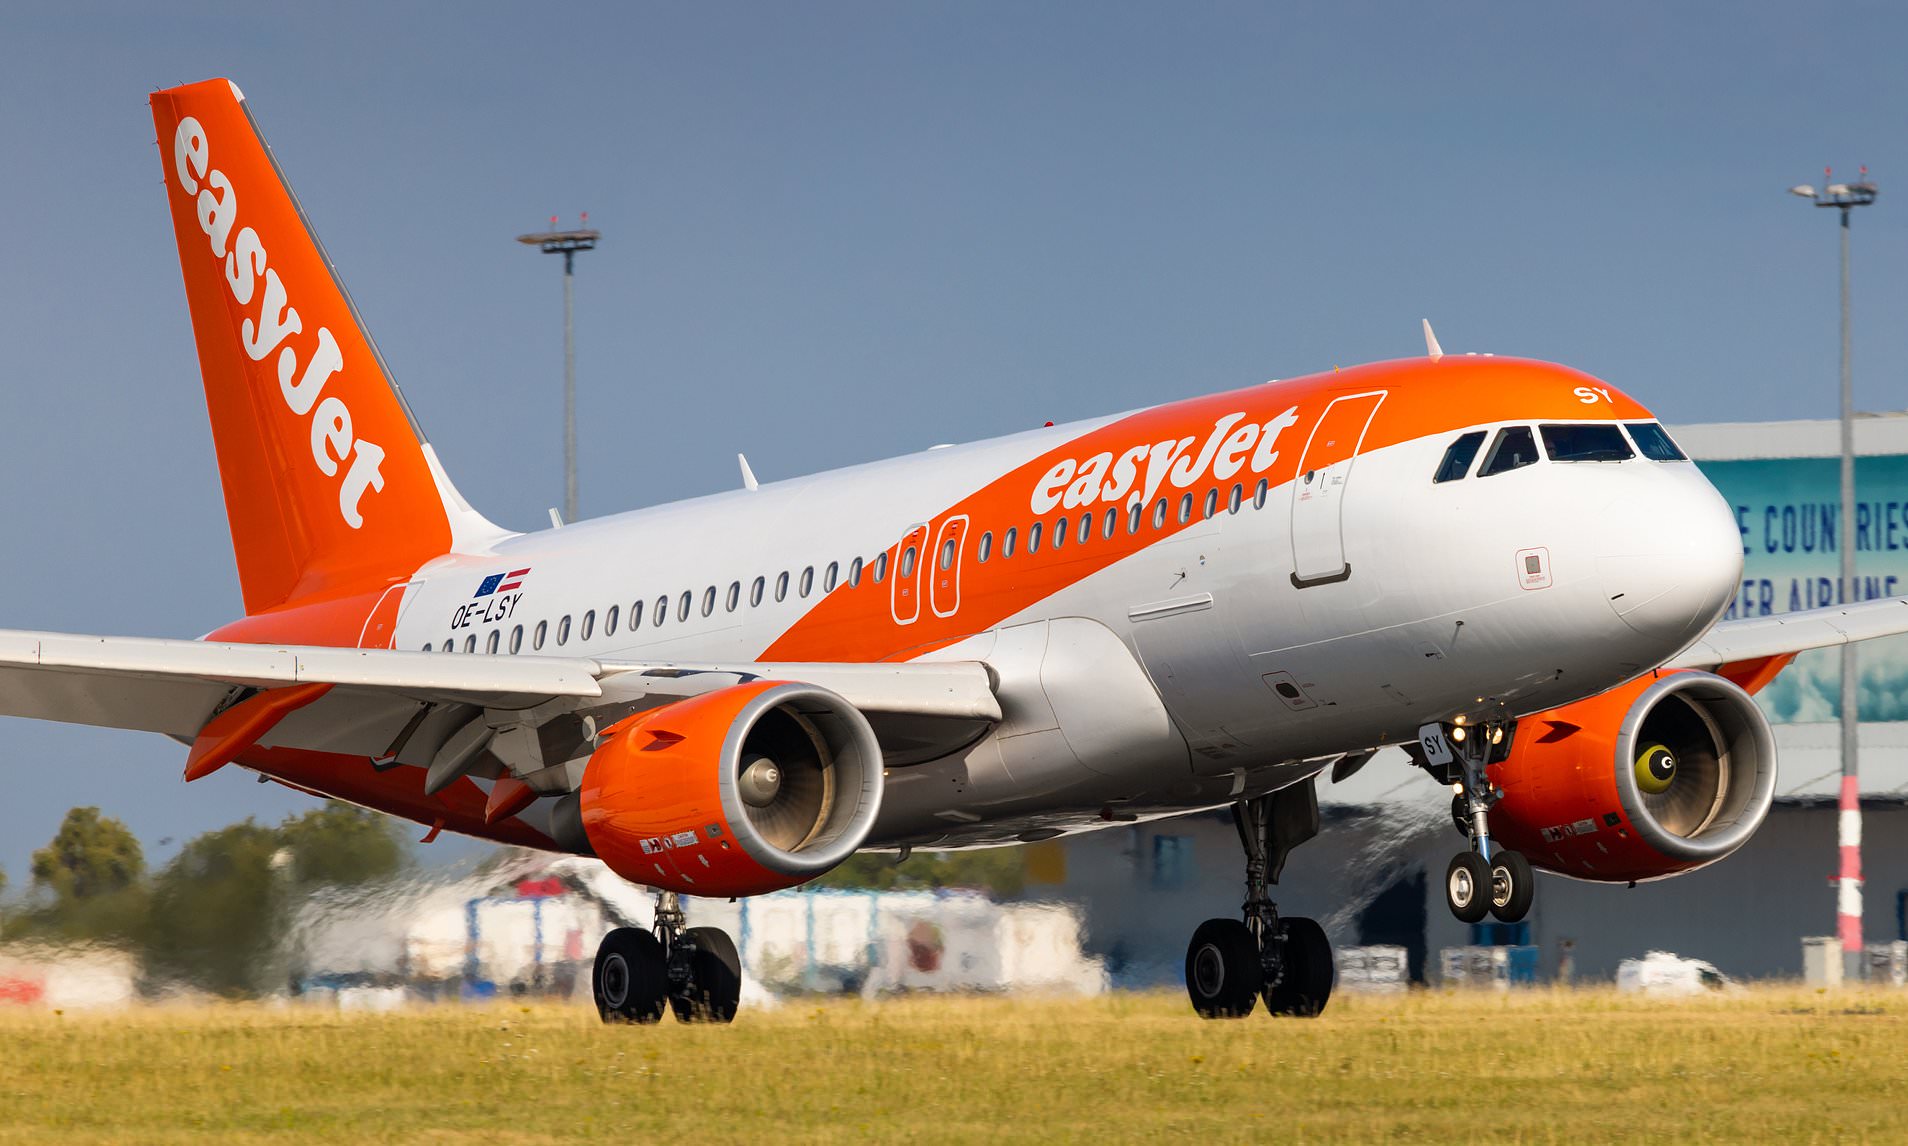 Ισπανία: 14 πτήσεις της Easyjet ακυρώθηκαν λόγω απεργίας των πιλότων